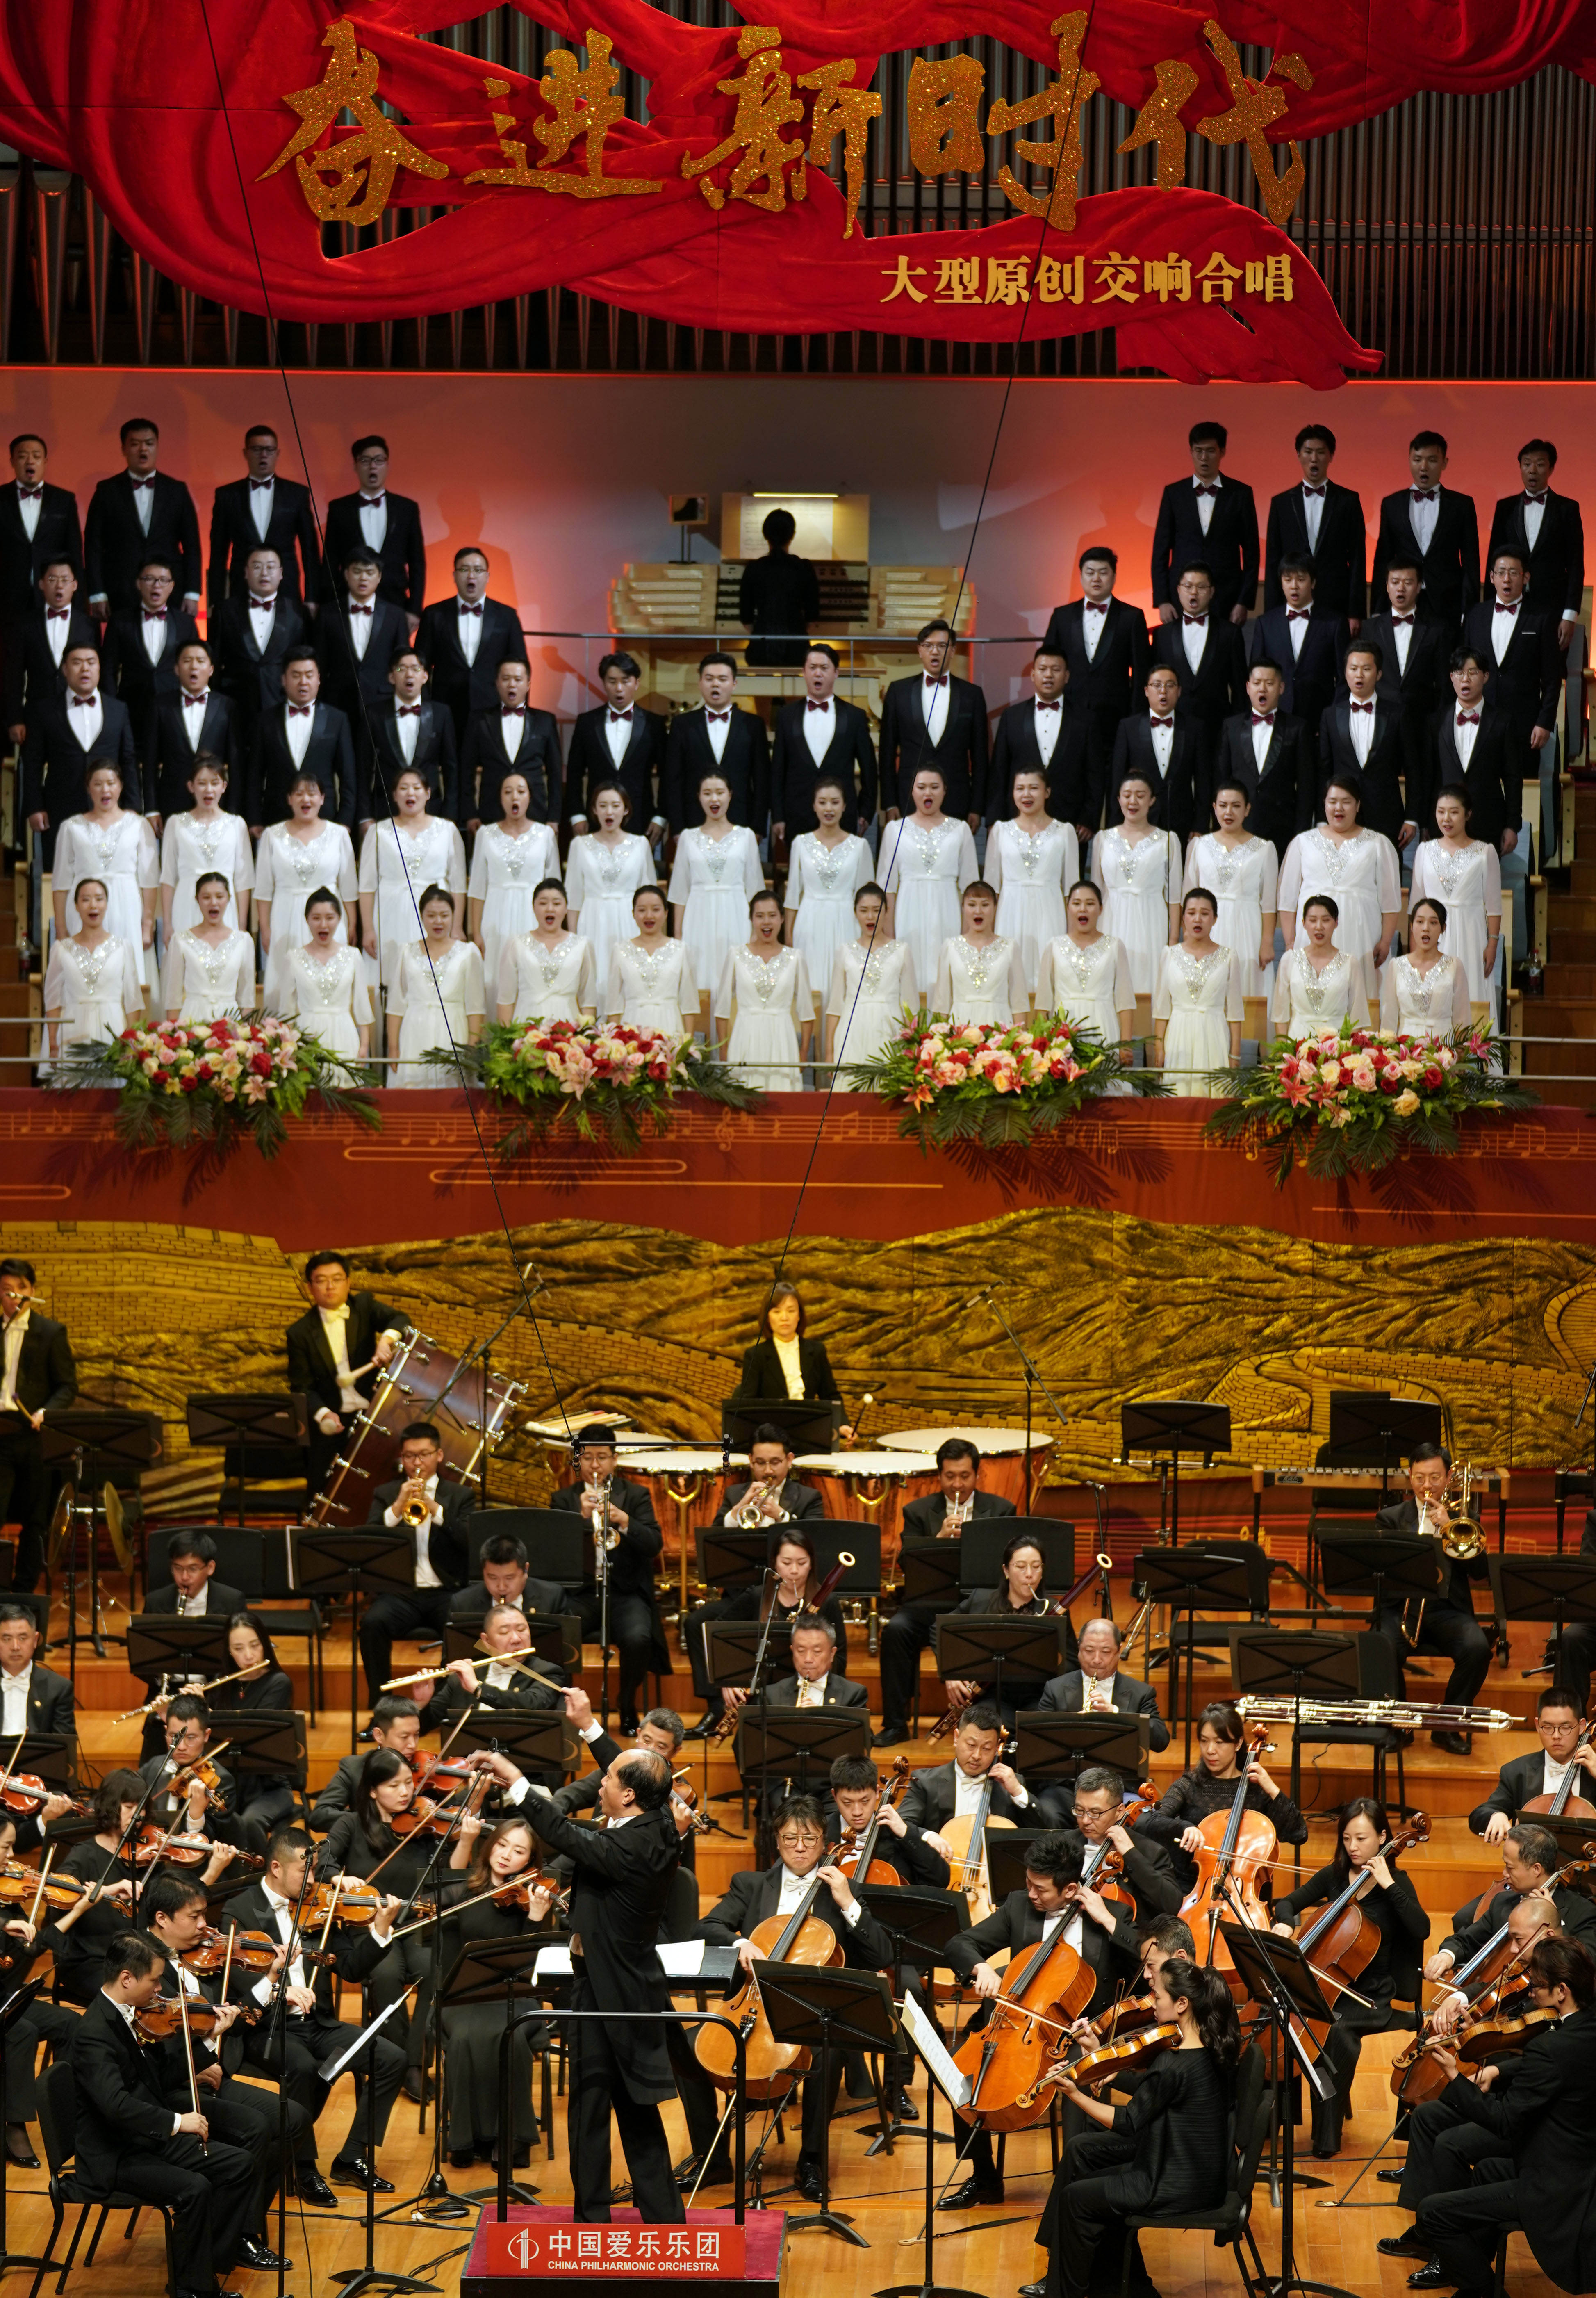 《奋进新时代》大型原创交响合唱音乐会在国家大剧院唱响